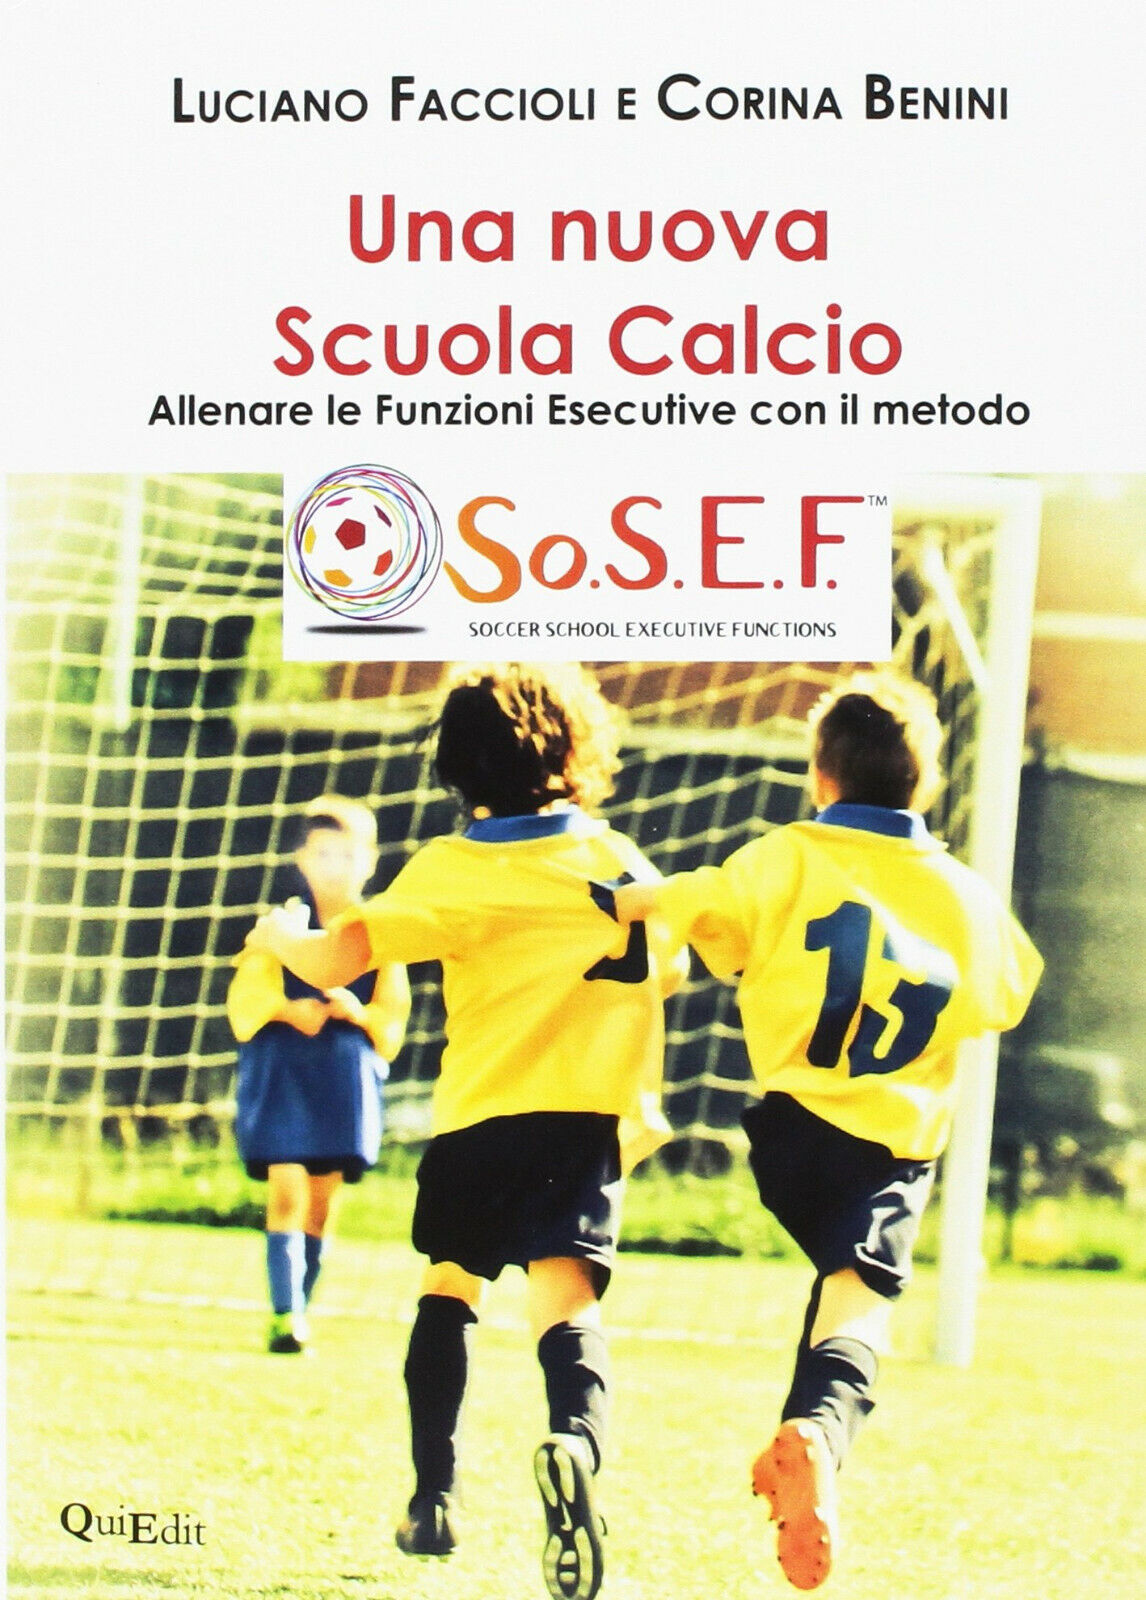 Una nuova scuola calcio - Luciano Faccioli, Corina Benini - QuiEdit, 2018 libro usato